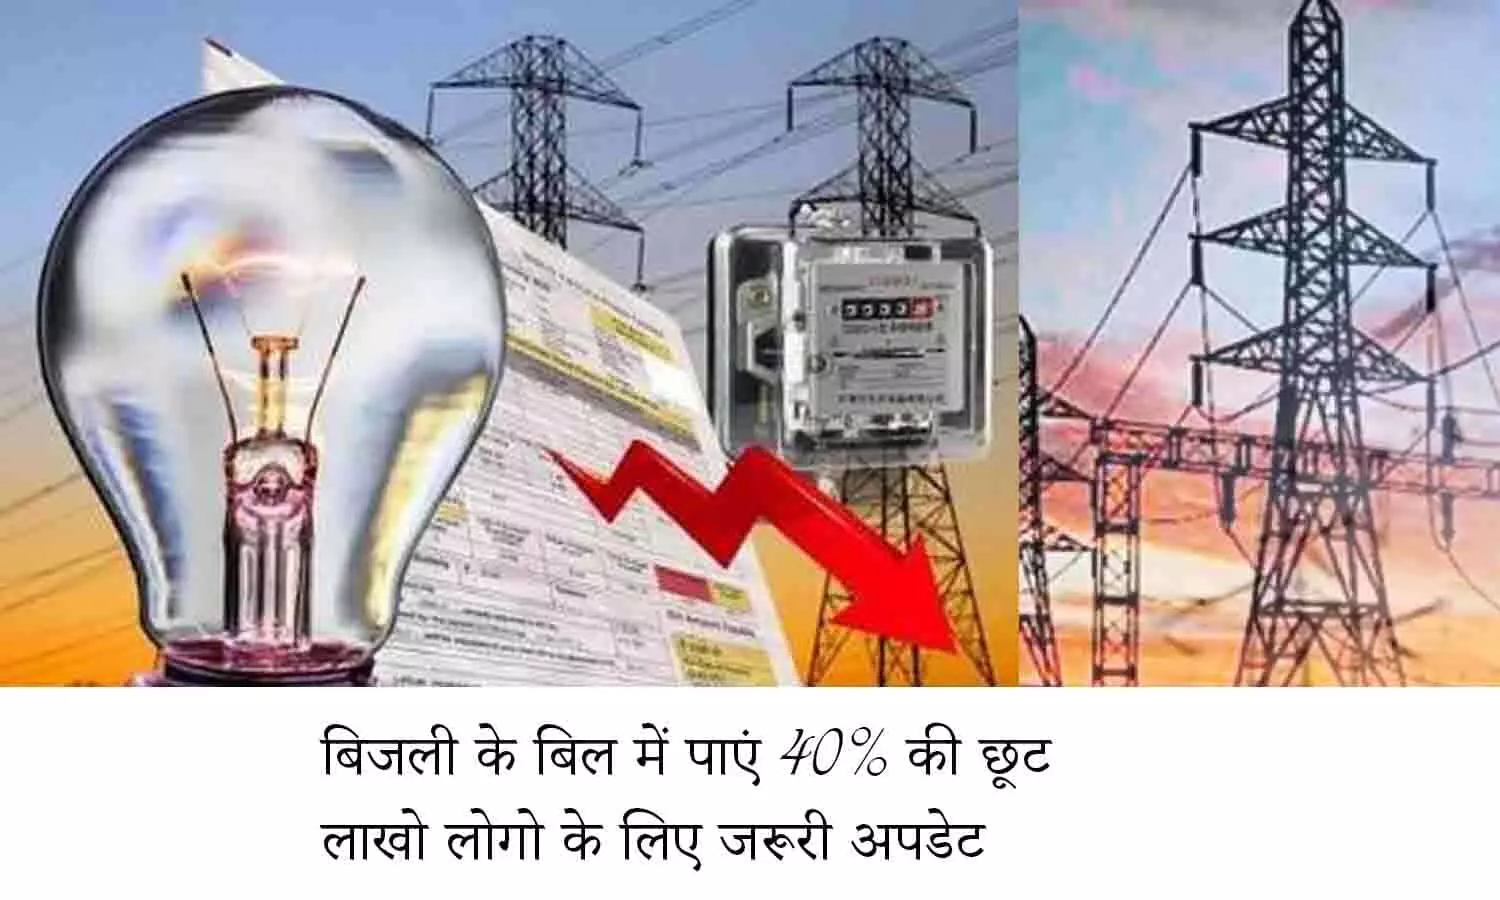 Bijli Bill Update November 2022: खुशखबरी! बिजली के बिल में पाएं 40% की छूट, लाखो लोगो के लिए जरूरी अपडेट